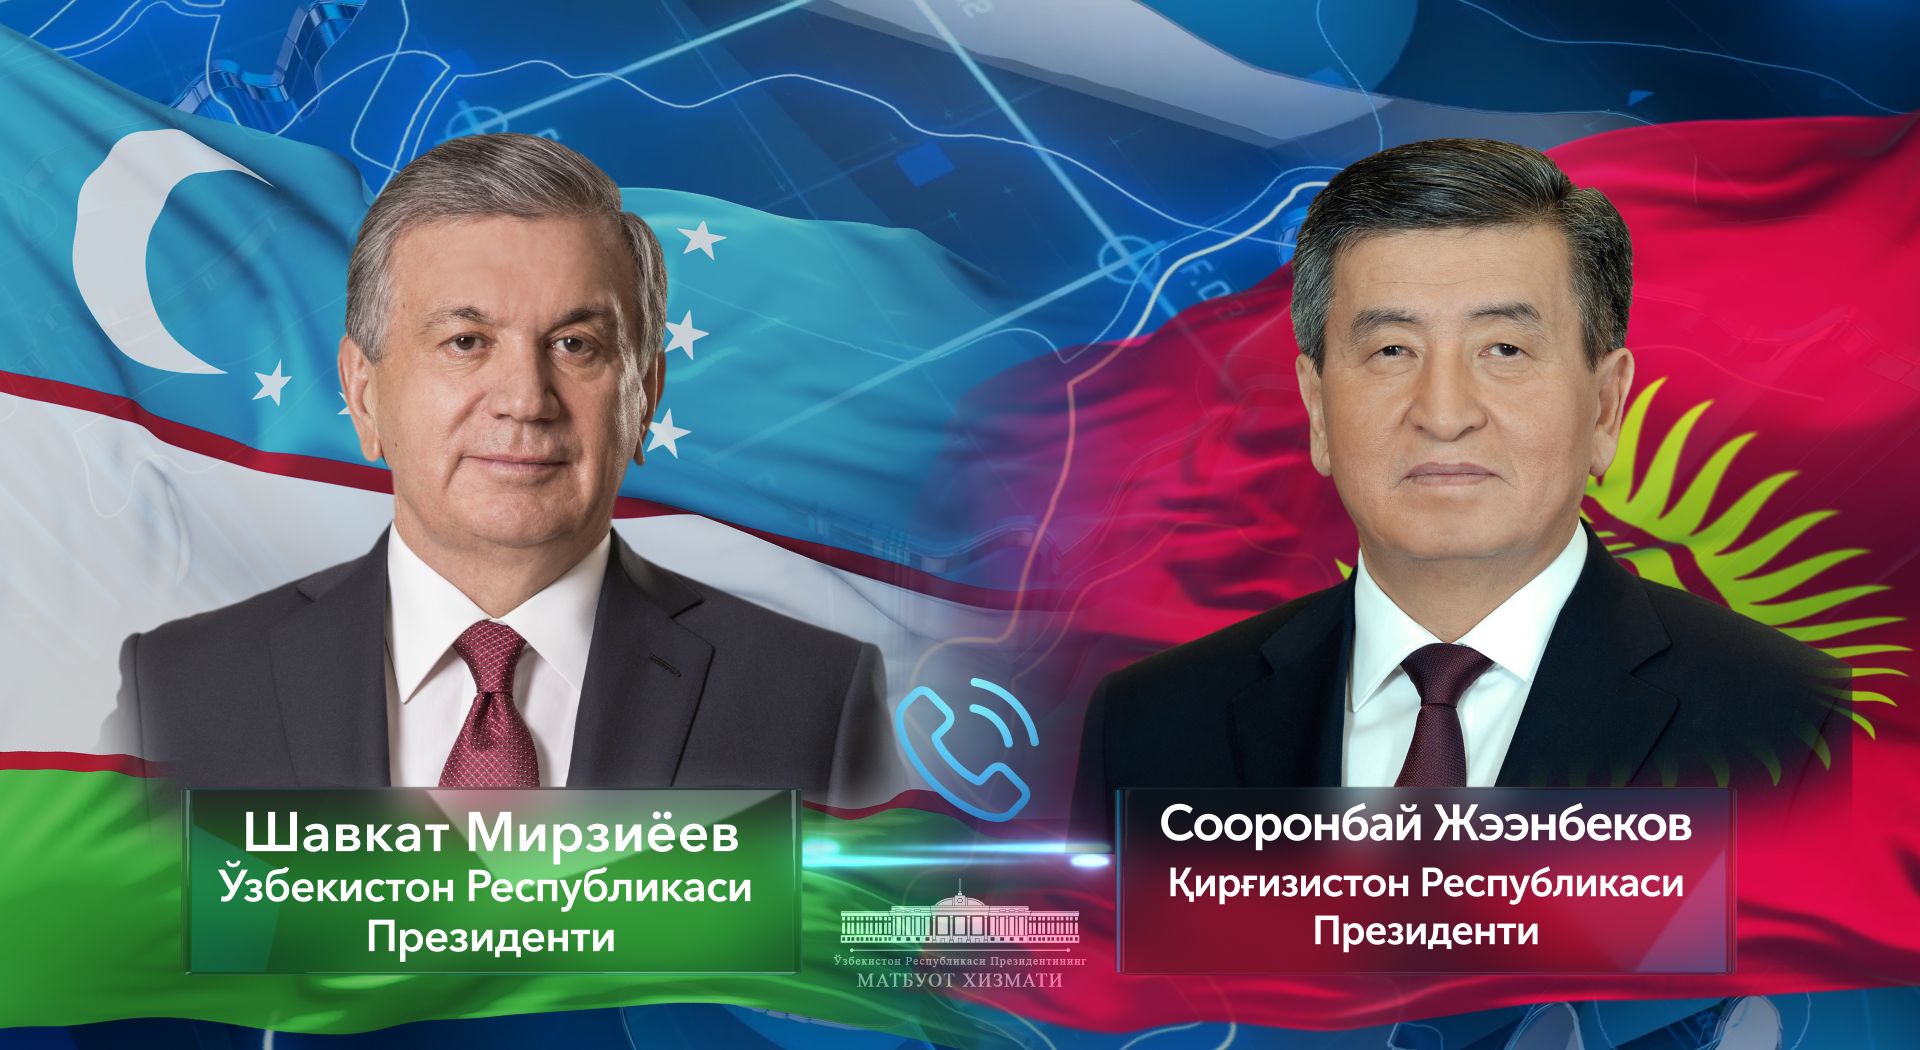 Состоялся телефонный разговор с Президентом Кыргызской Республики Сооронбаем Жээнбековым